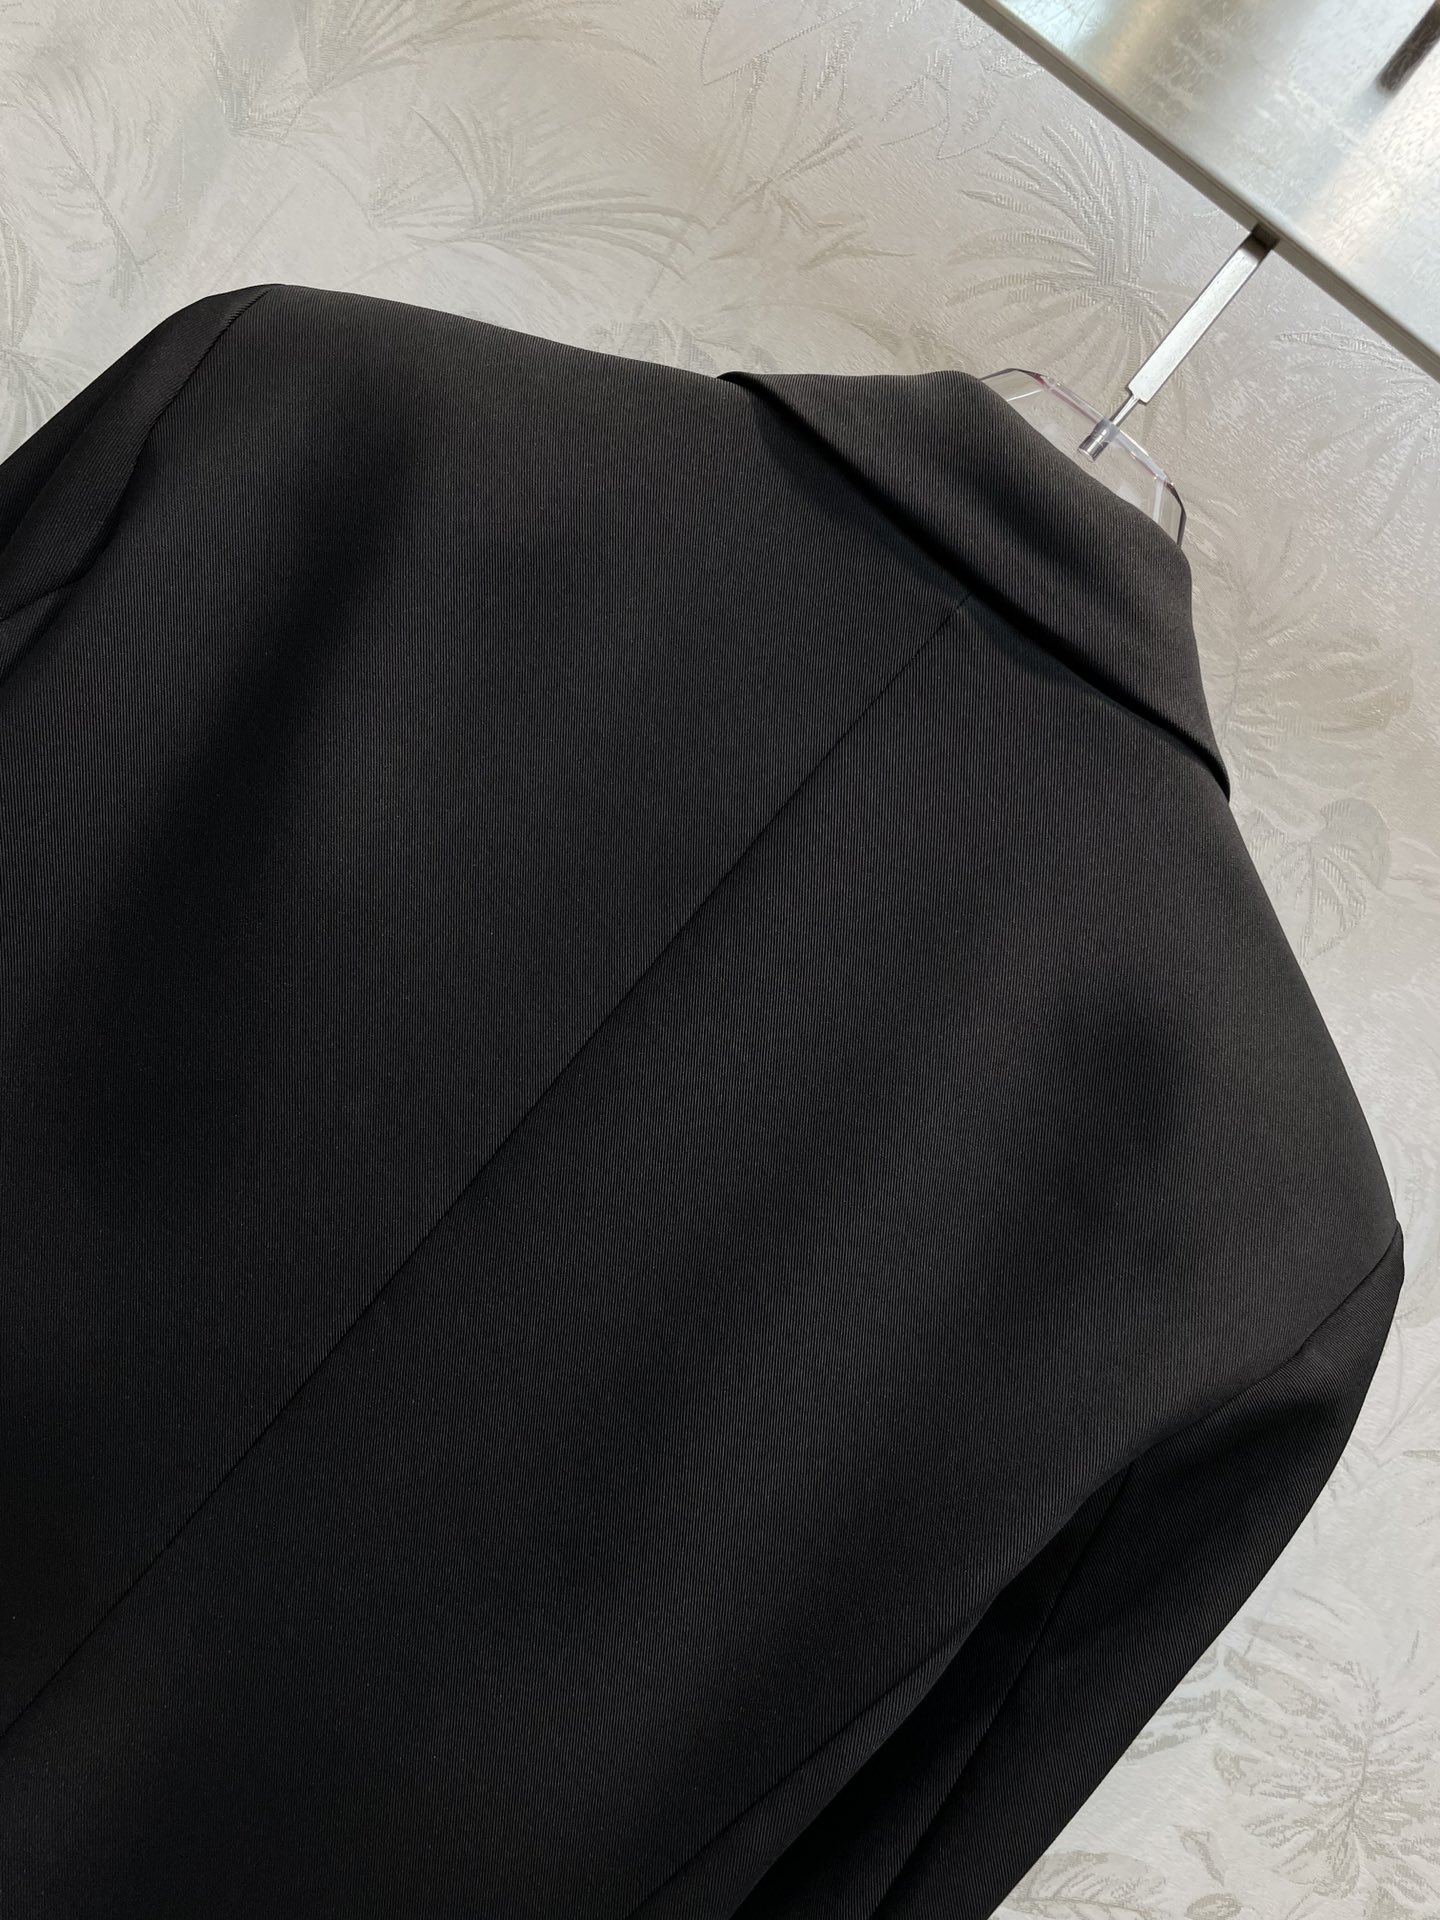 24早春Schiaparelli撞色刺绣尺寸图线条勾勒西装外套经典廓形剪裁整个设计简洁有亮点采用撞色明线